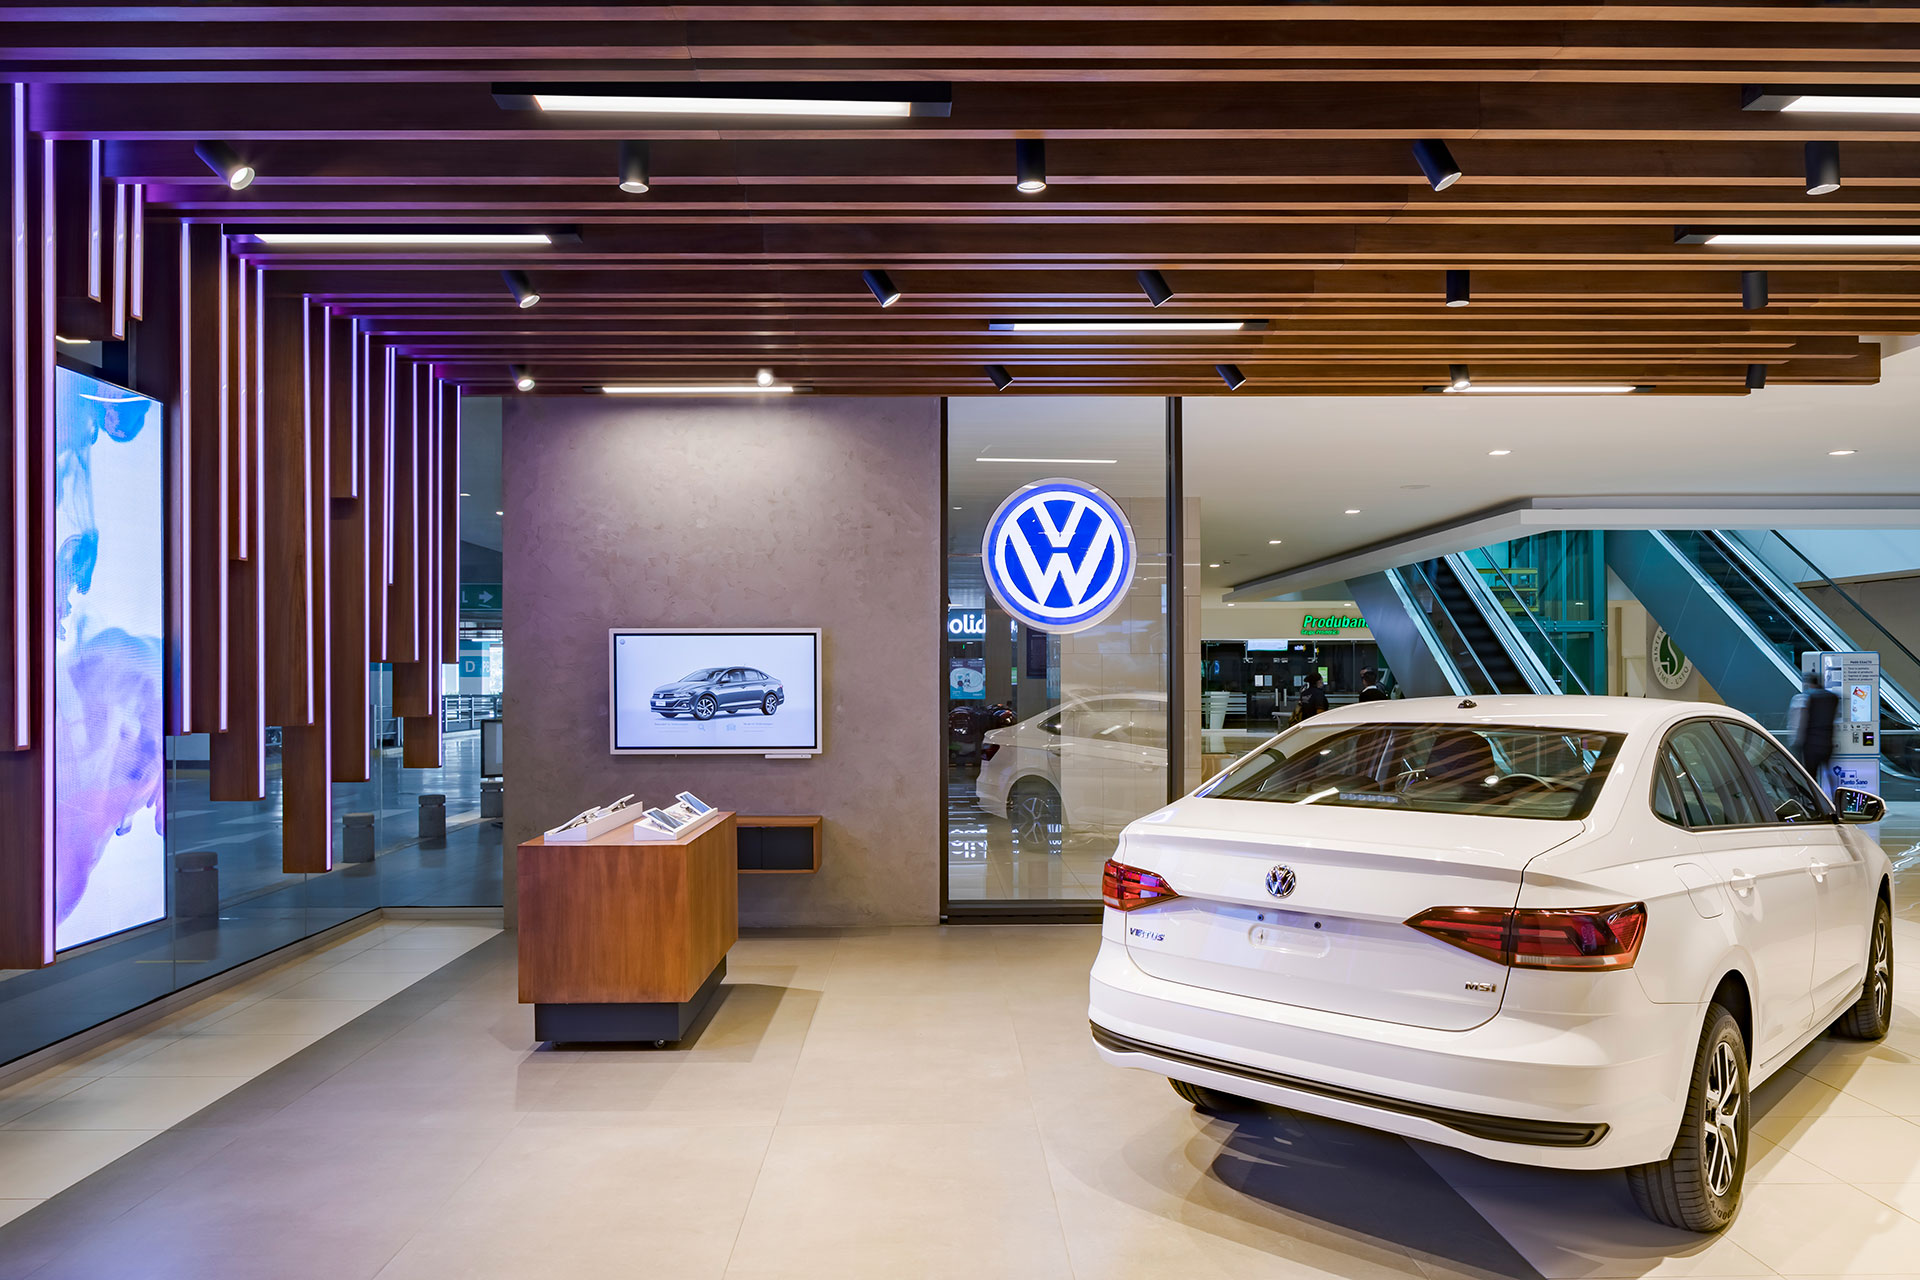 Experiencia Volkswagen - Diseño arquitectónico, construcción, retail, locales comerciales en Quito | CVD Arquitectura